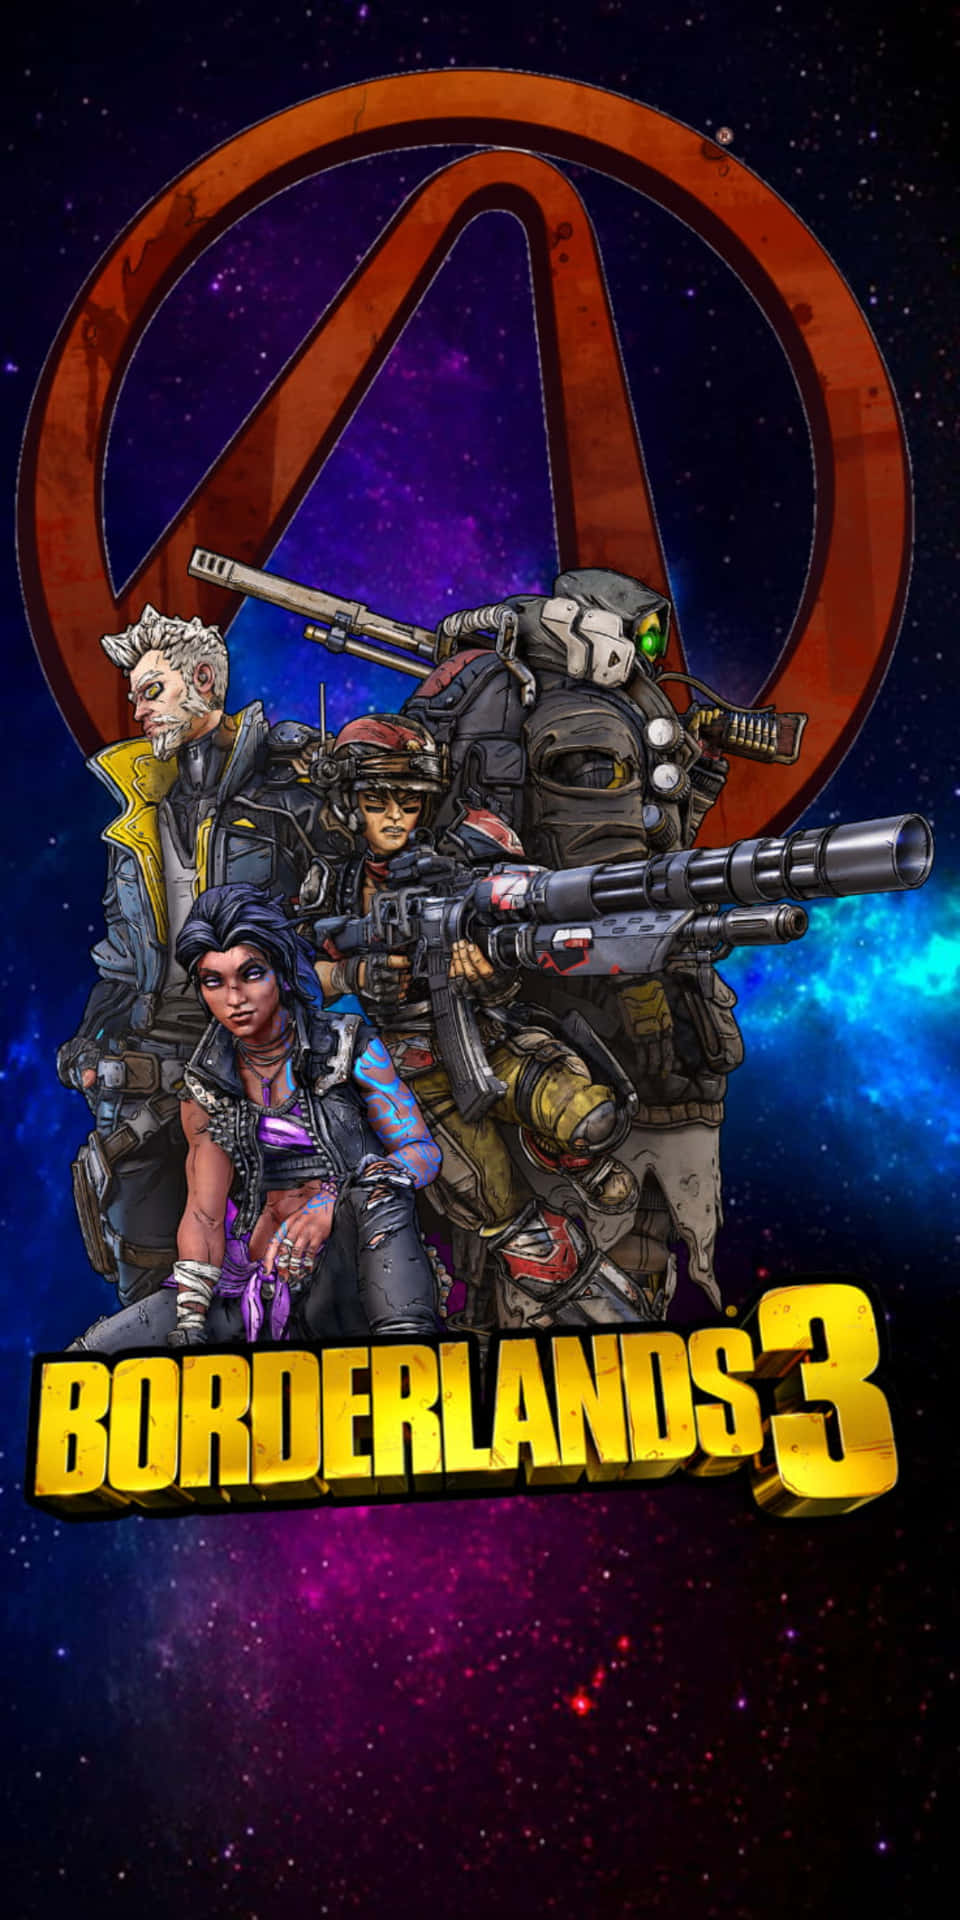 Videospiel Charaktere Pixel 3 Borderlands 3 Hintergrund